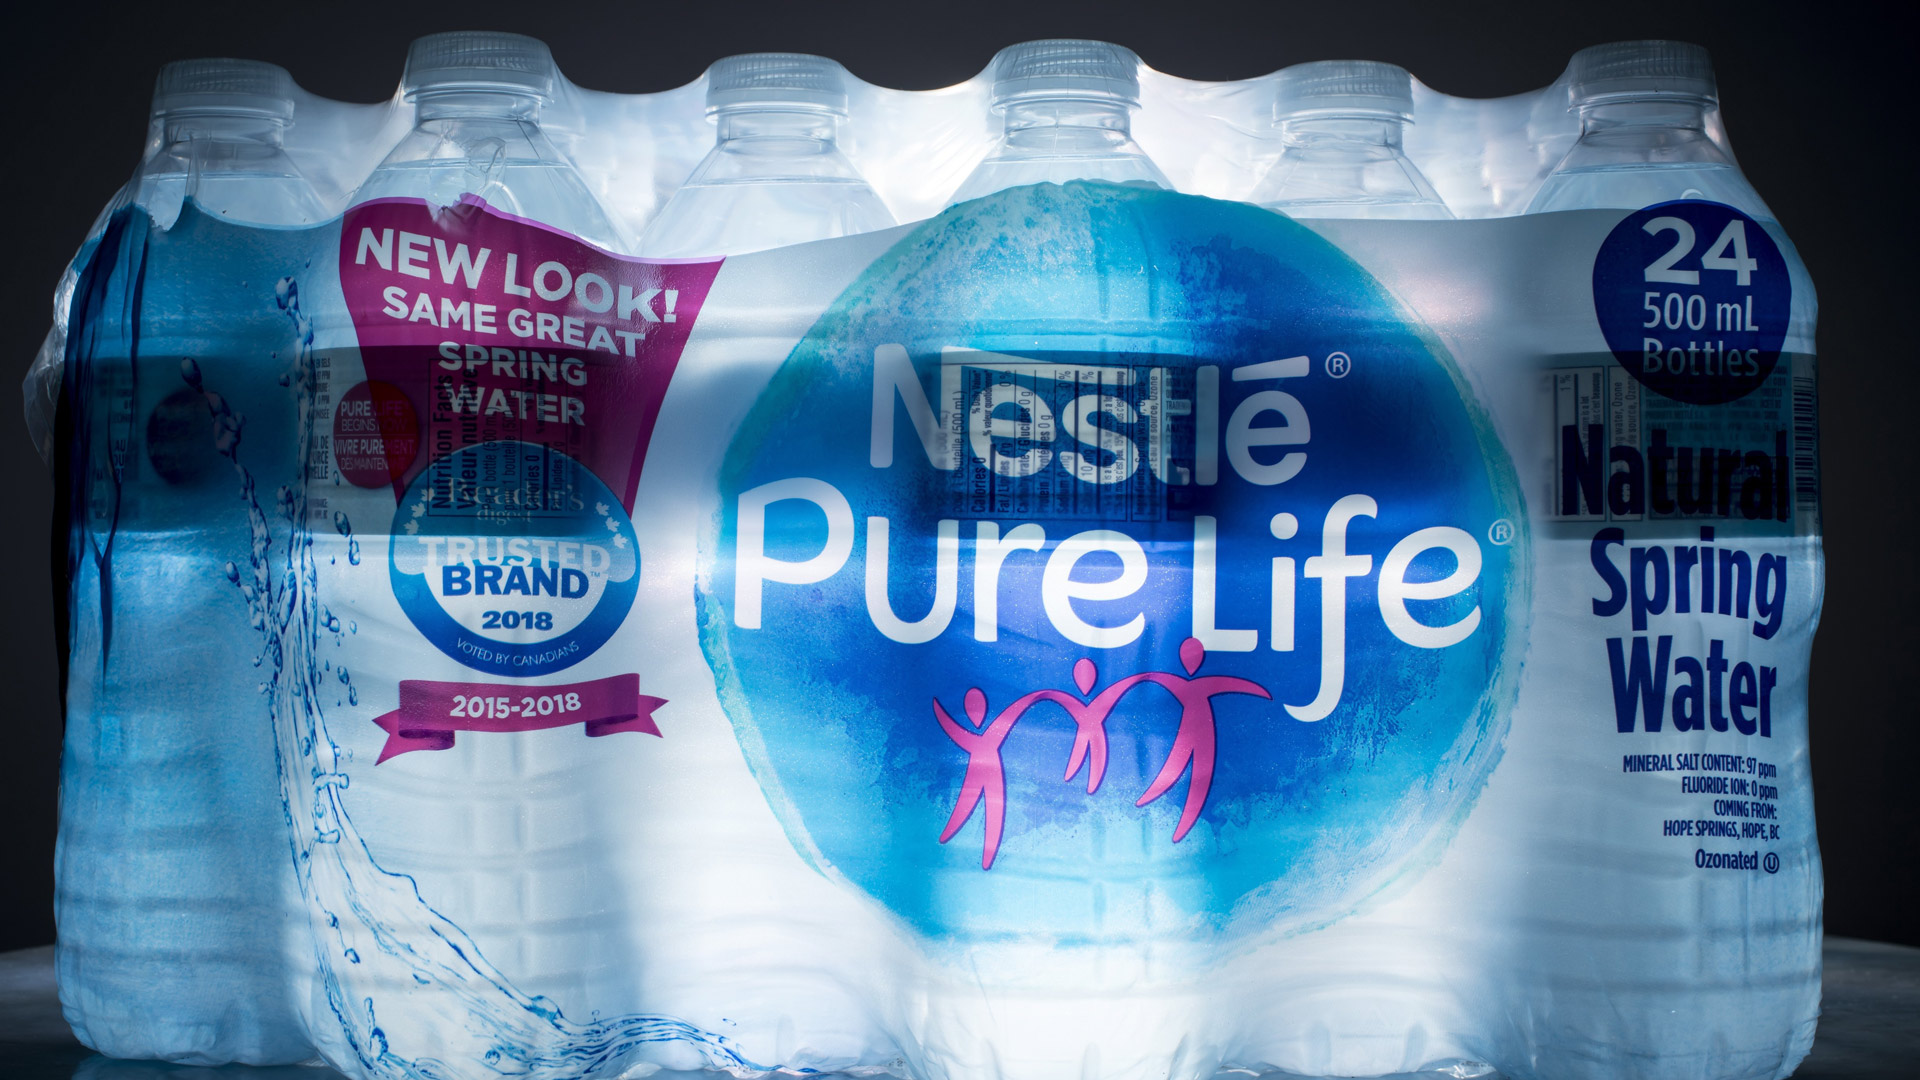 Pure Life-Wasserflaschen von Nestlé in den USA